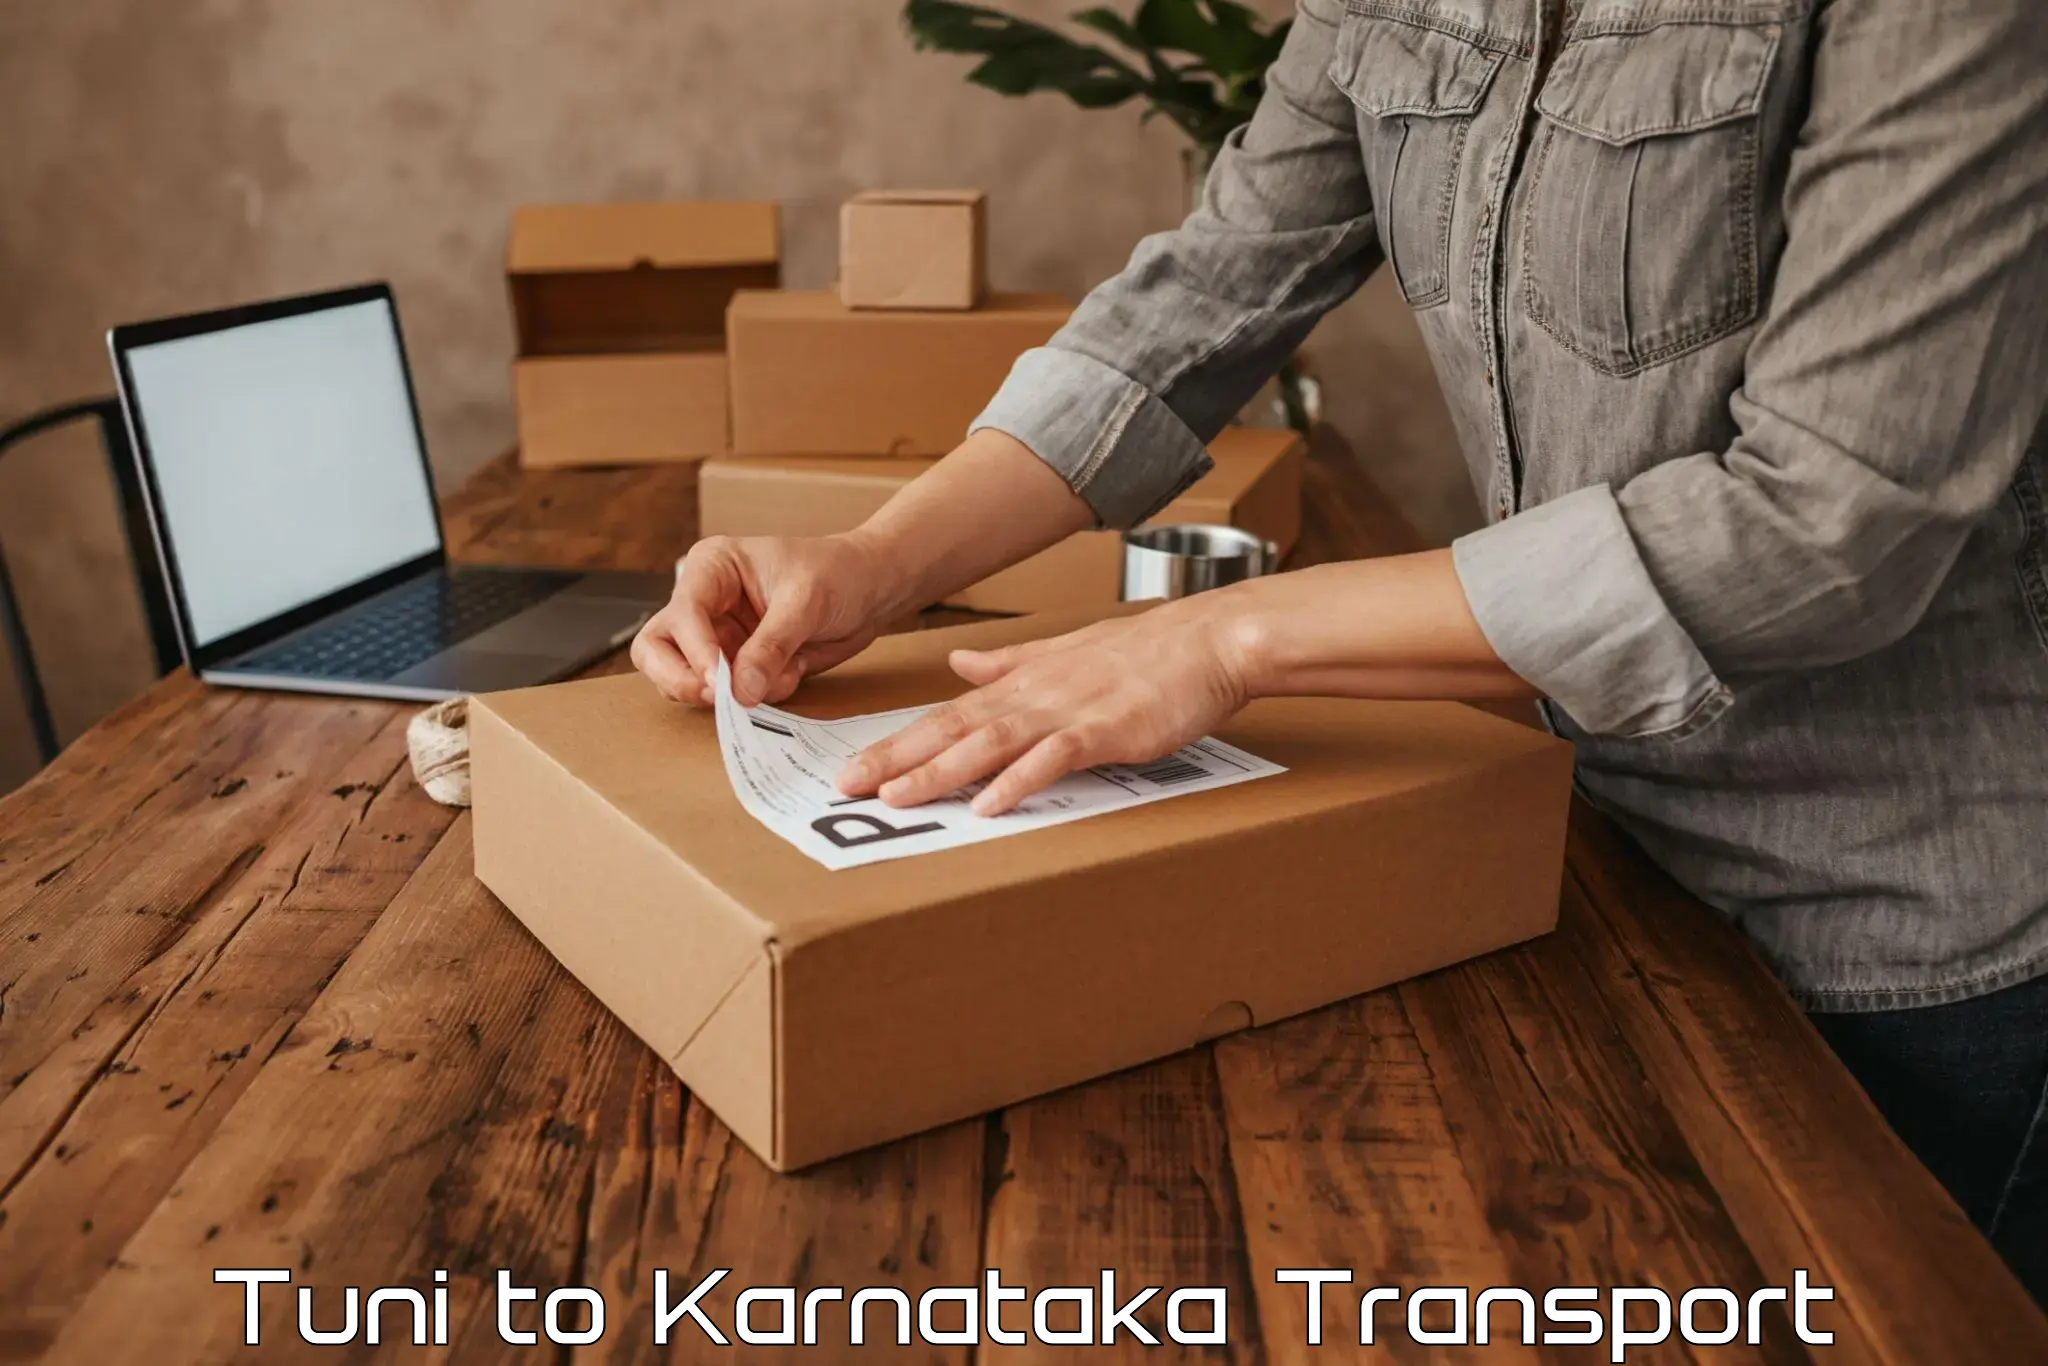 Online transport booking Tuni to Karnataka